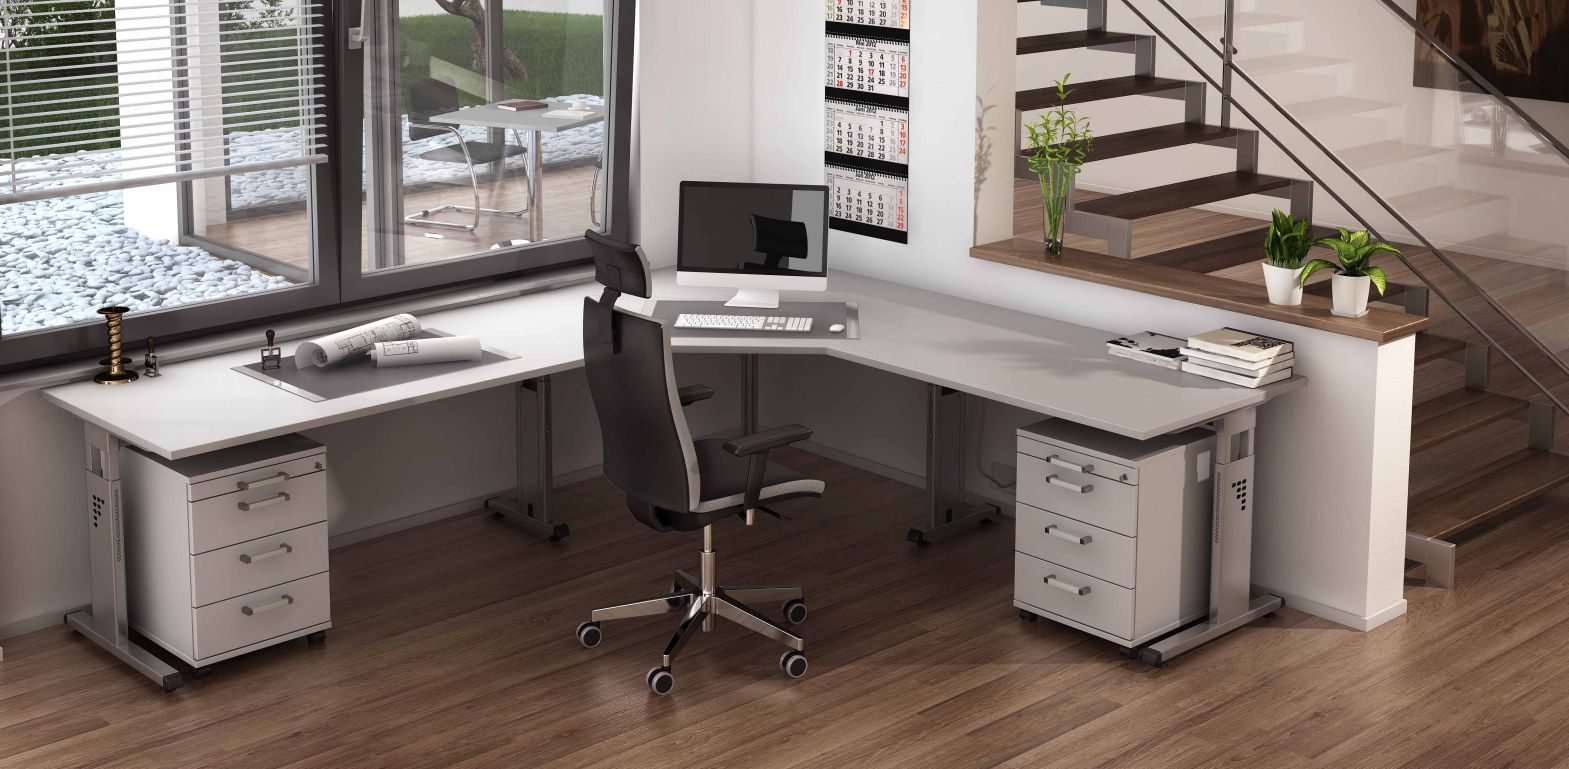 Winkelschreibtisch höhenverstellbar,  Schreibtischstuhl, Rollcontainer als preiswertes Home-Office-Möbelset